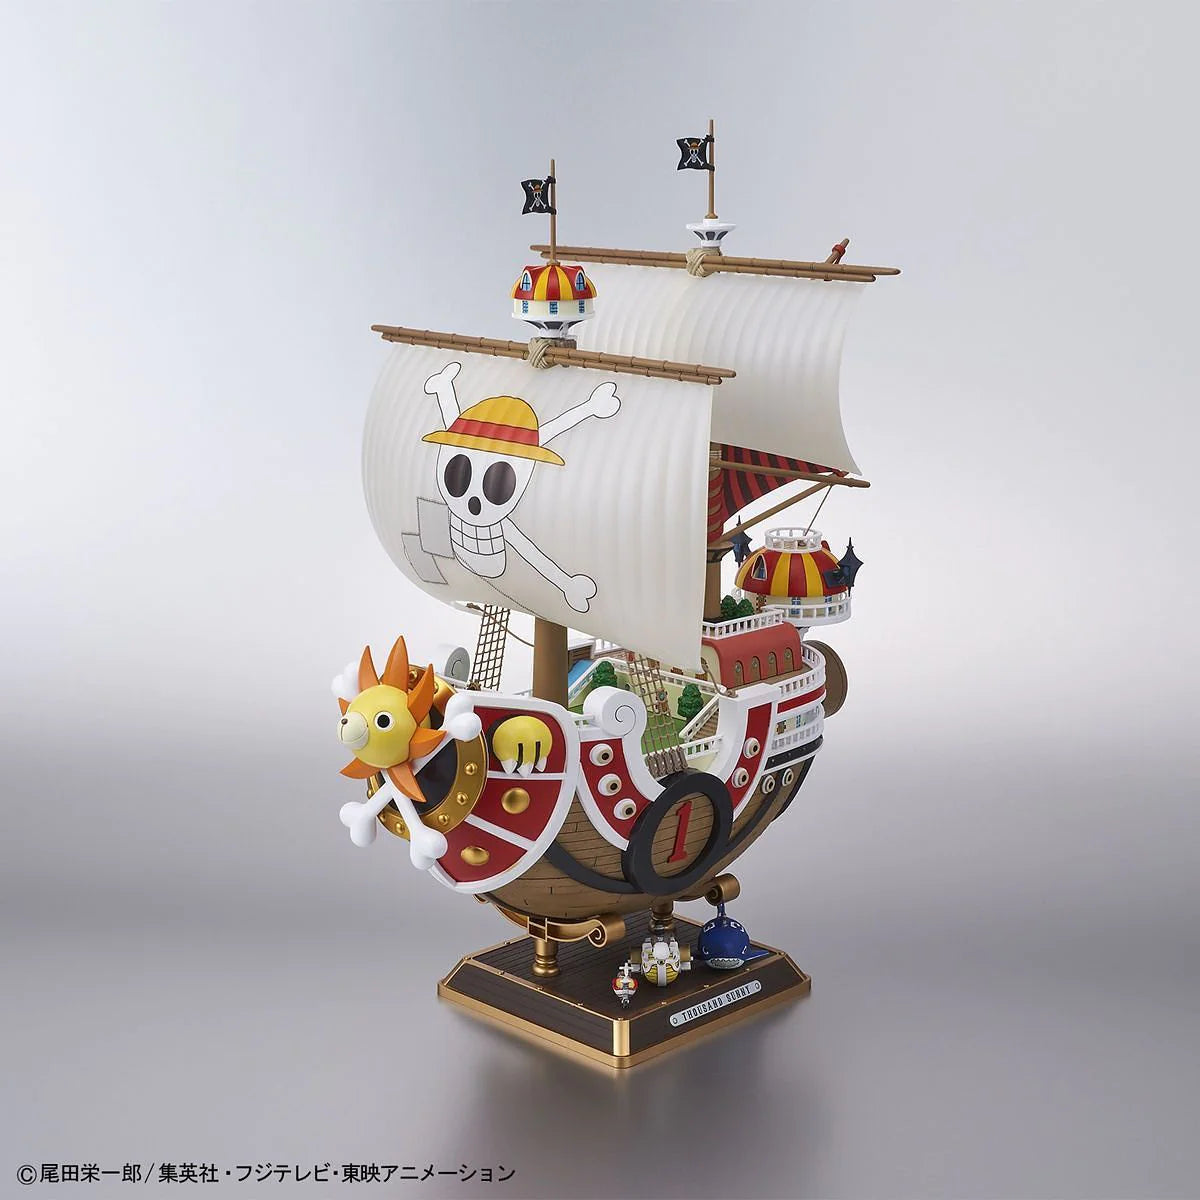 Bandai Hobby One Piece: Thousand Sunny Land of Wano Version, Bandai Spirits SailingShip Collection